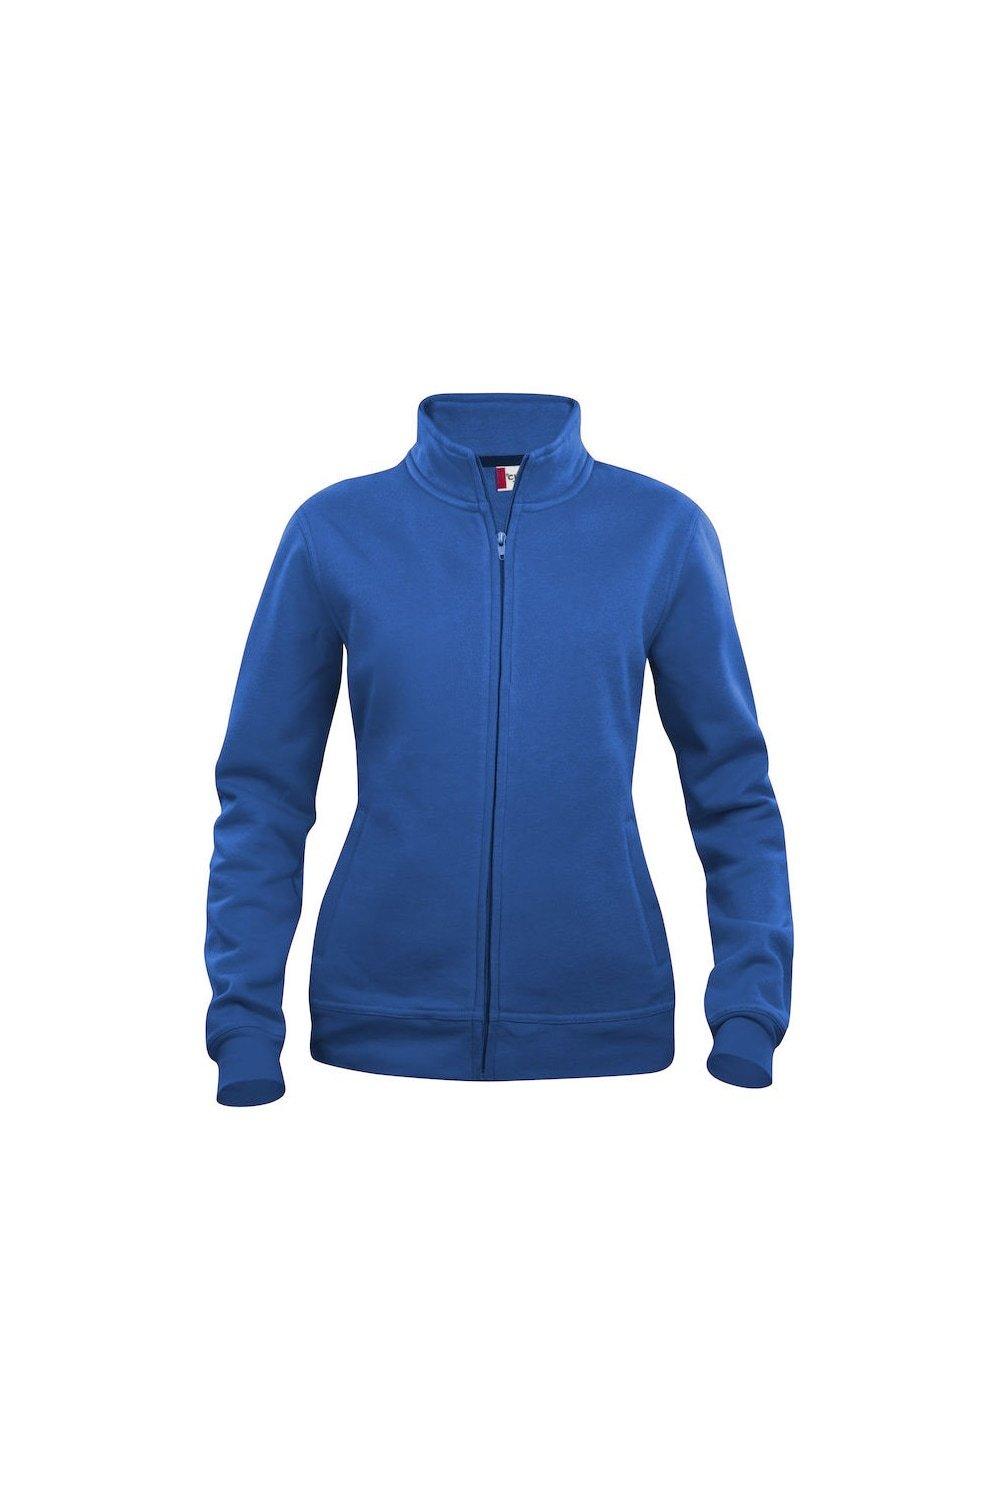 Базовая куртка Clique, синий базовая спортивная сумка clique синий